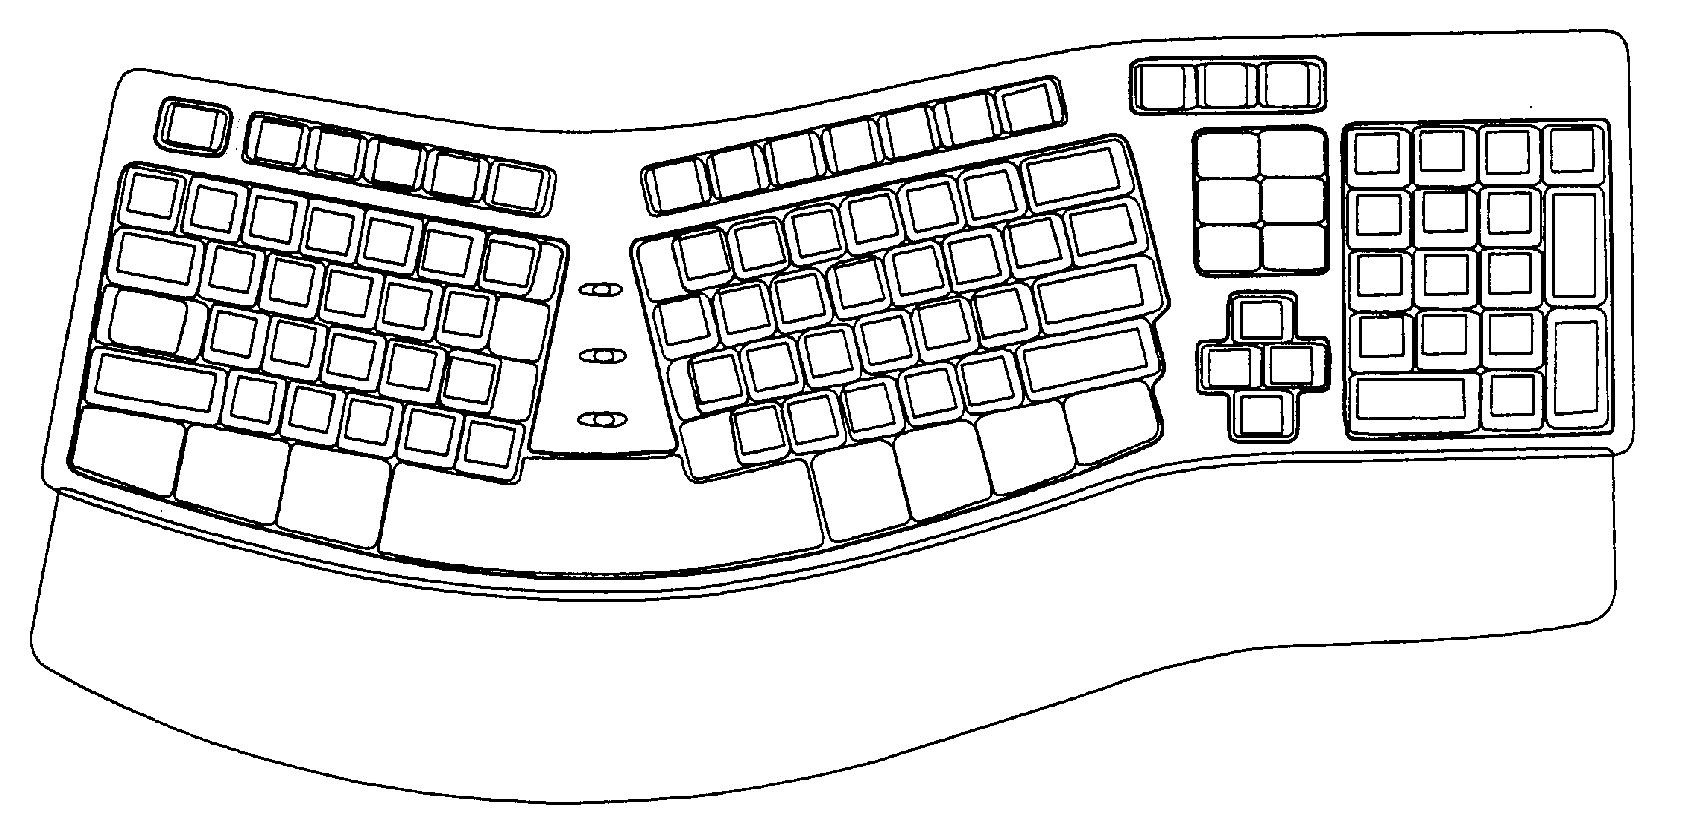 键盘简单画法图片